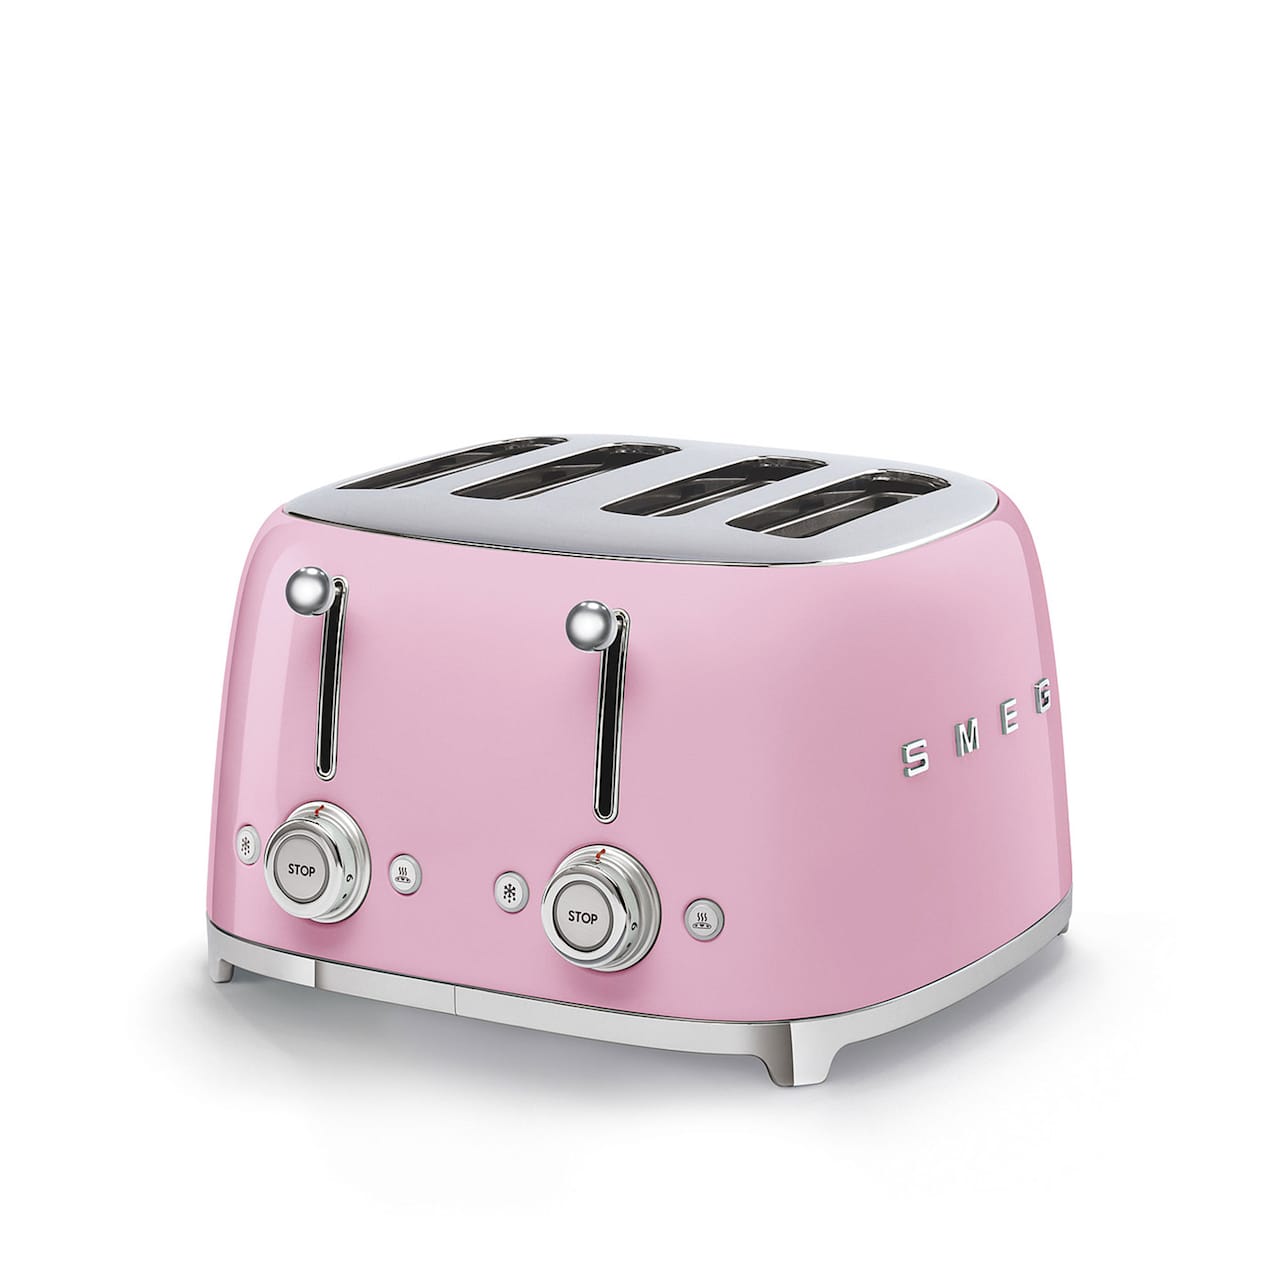 Smeg 4 Slot Toaster Pink